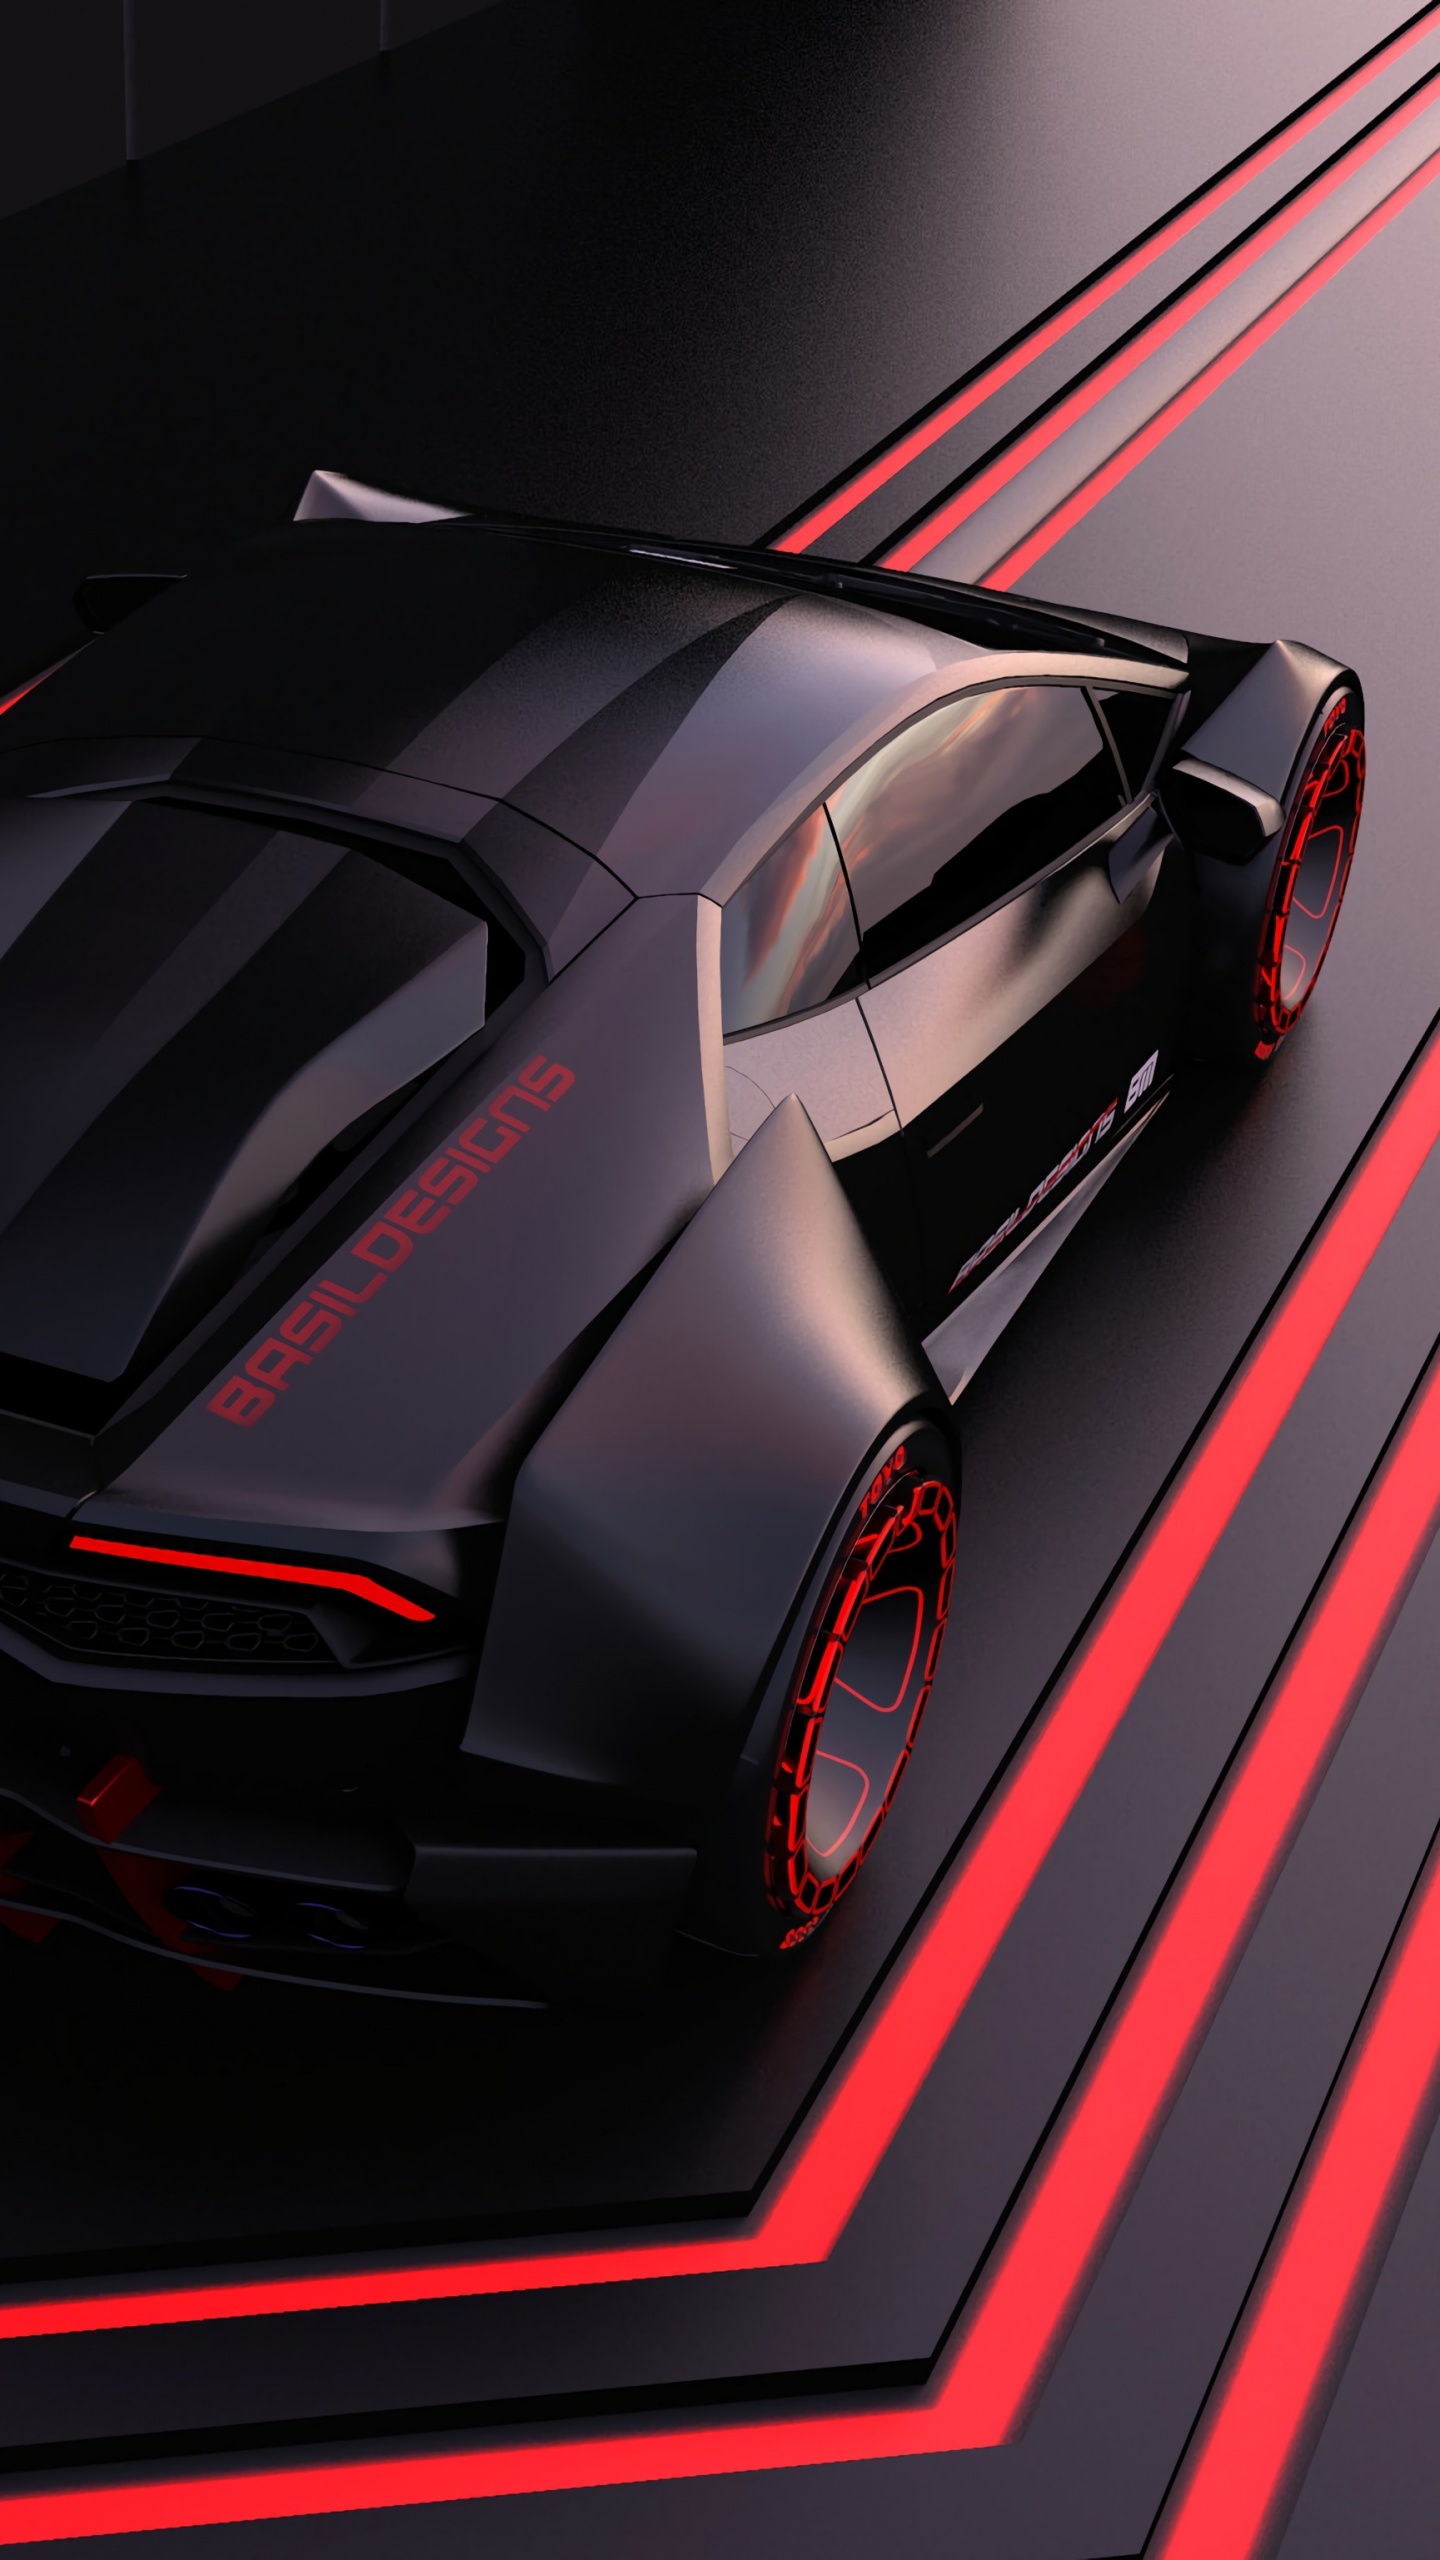 Voiture de Sport Ferrari Rouge Sur Tunnel Rouge et Noir. Wallpaper in 1440x2560 Resolution